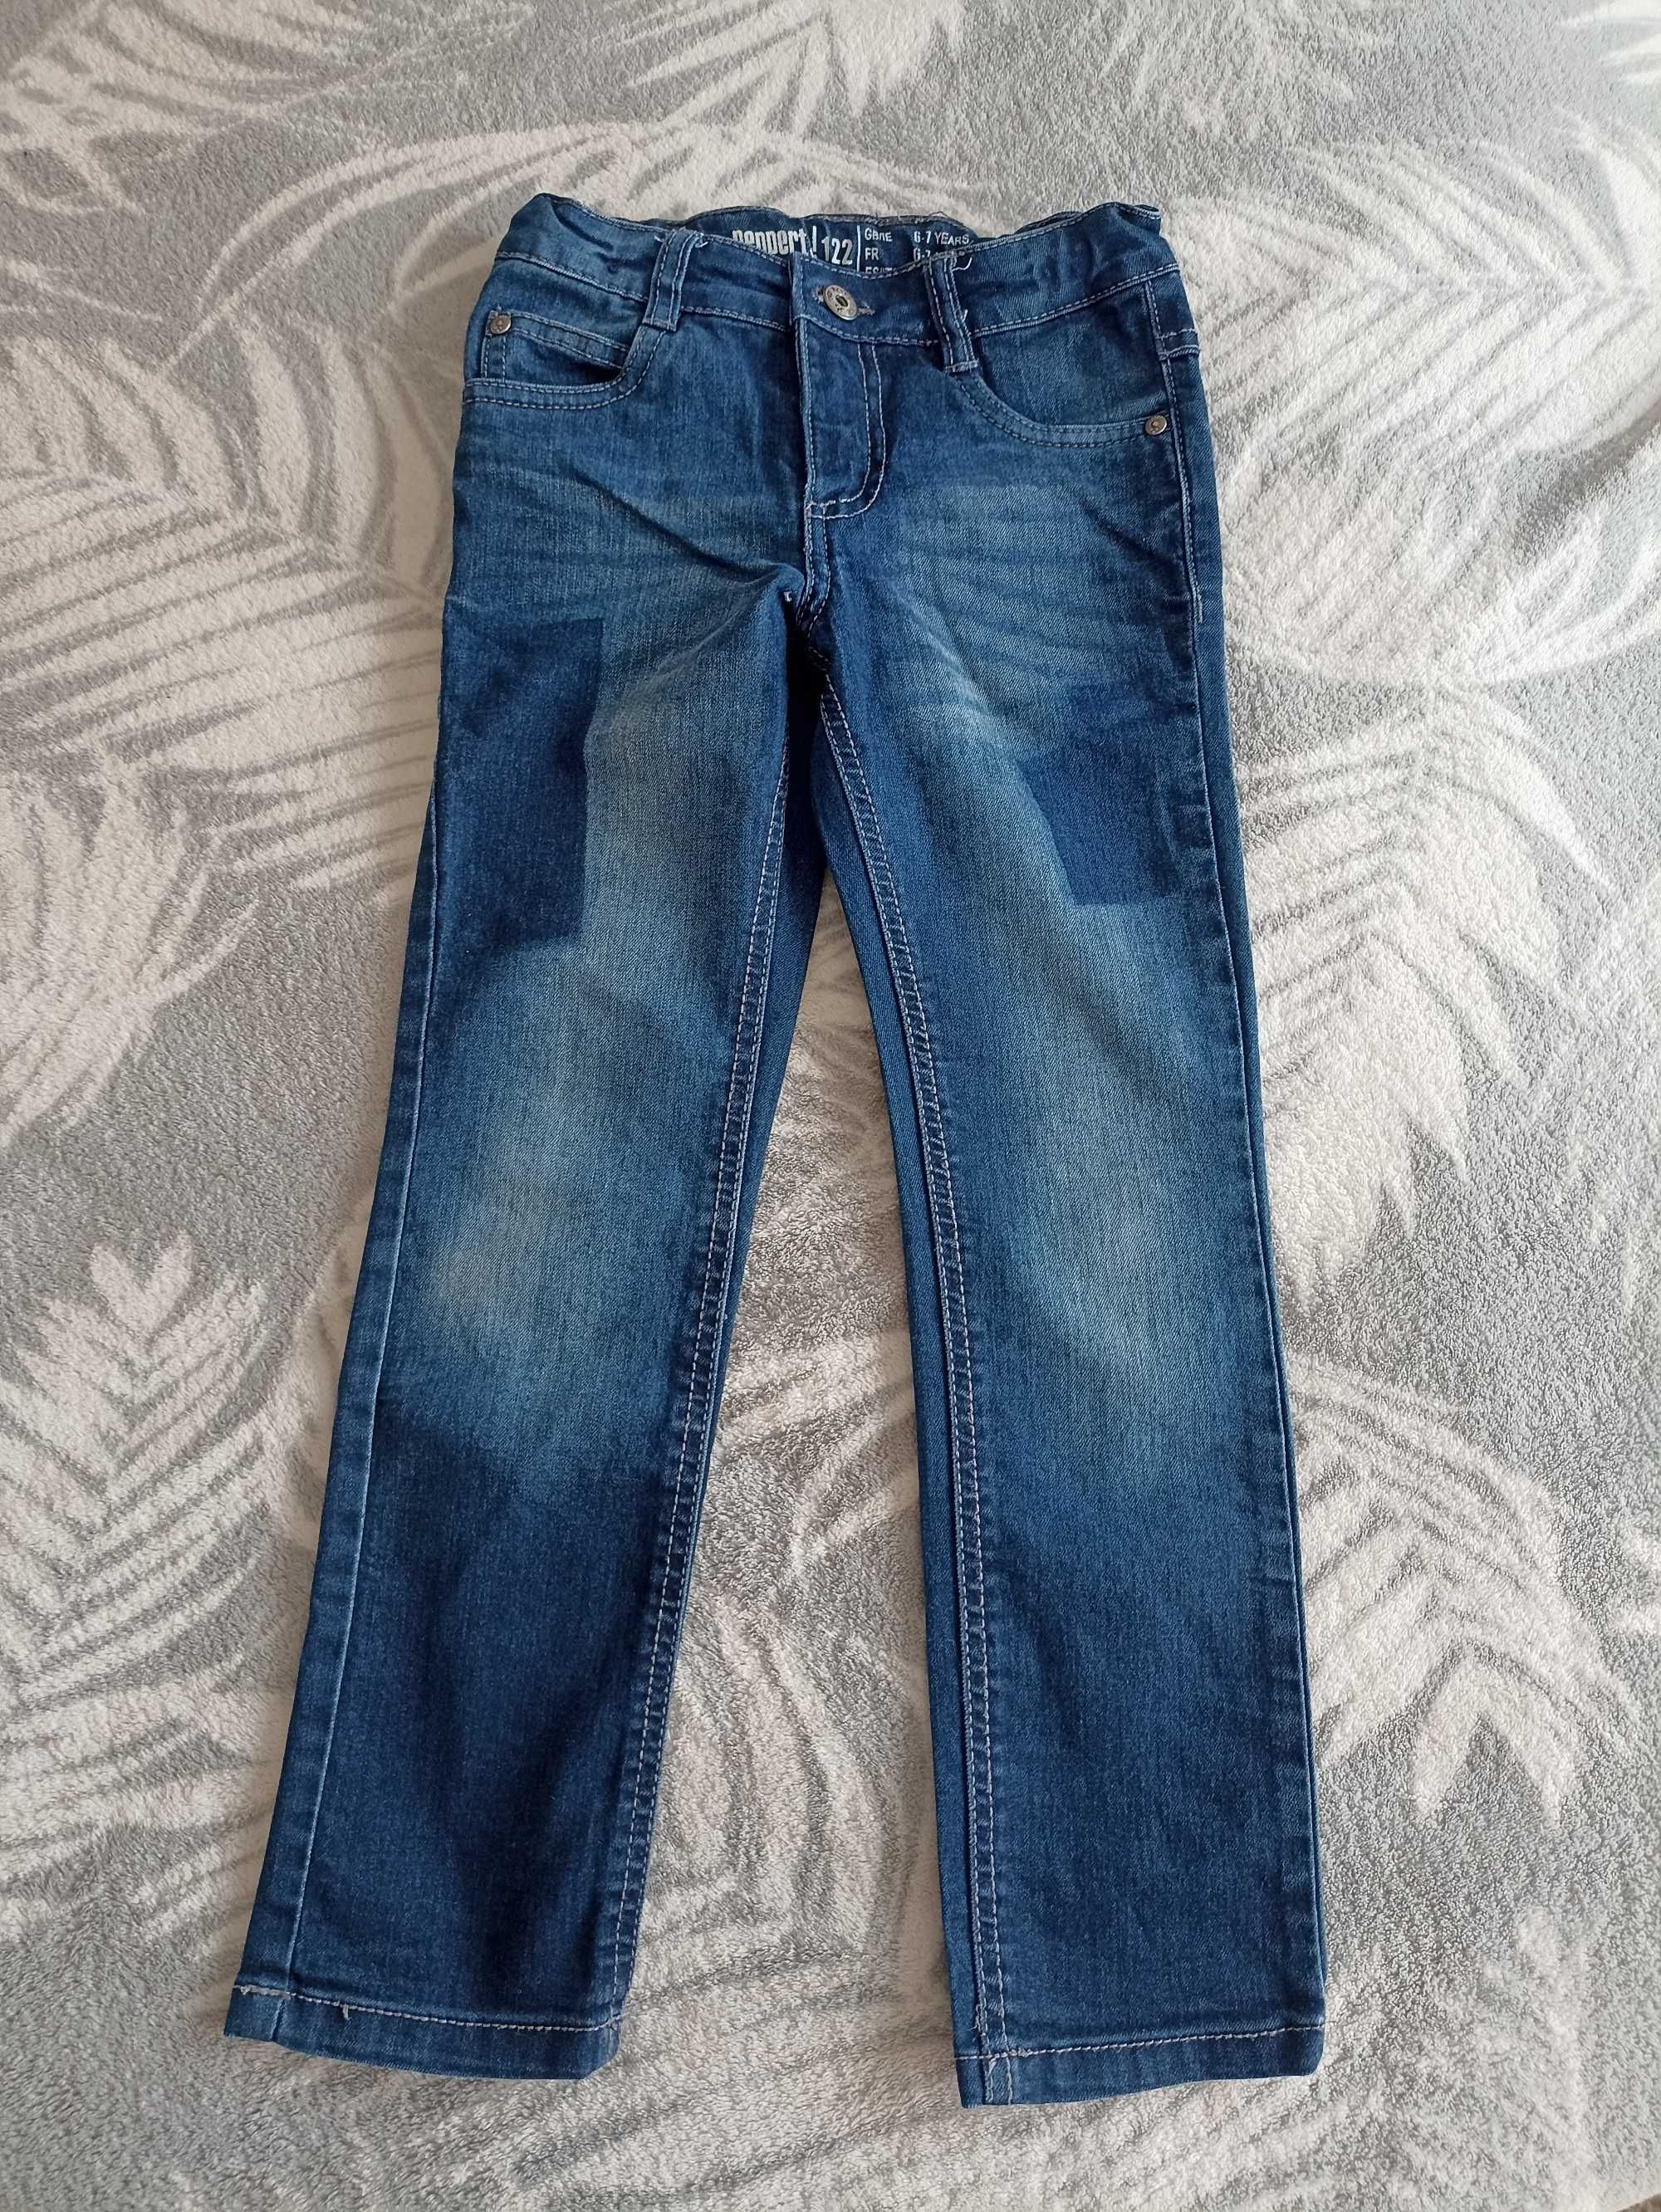 spodnie jeansowe Peppertrs 122